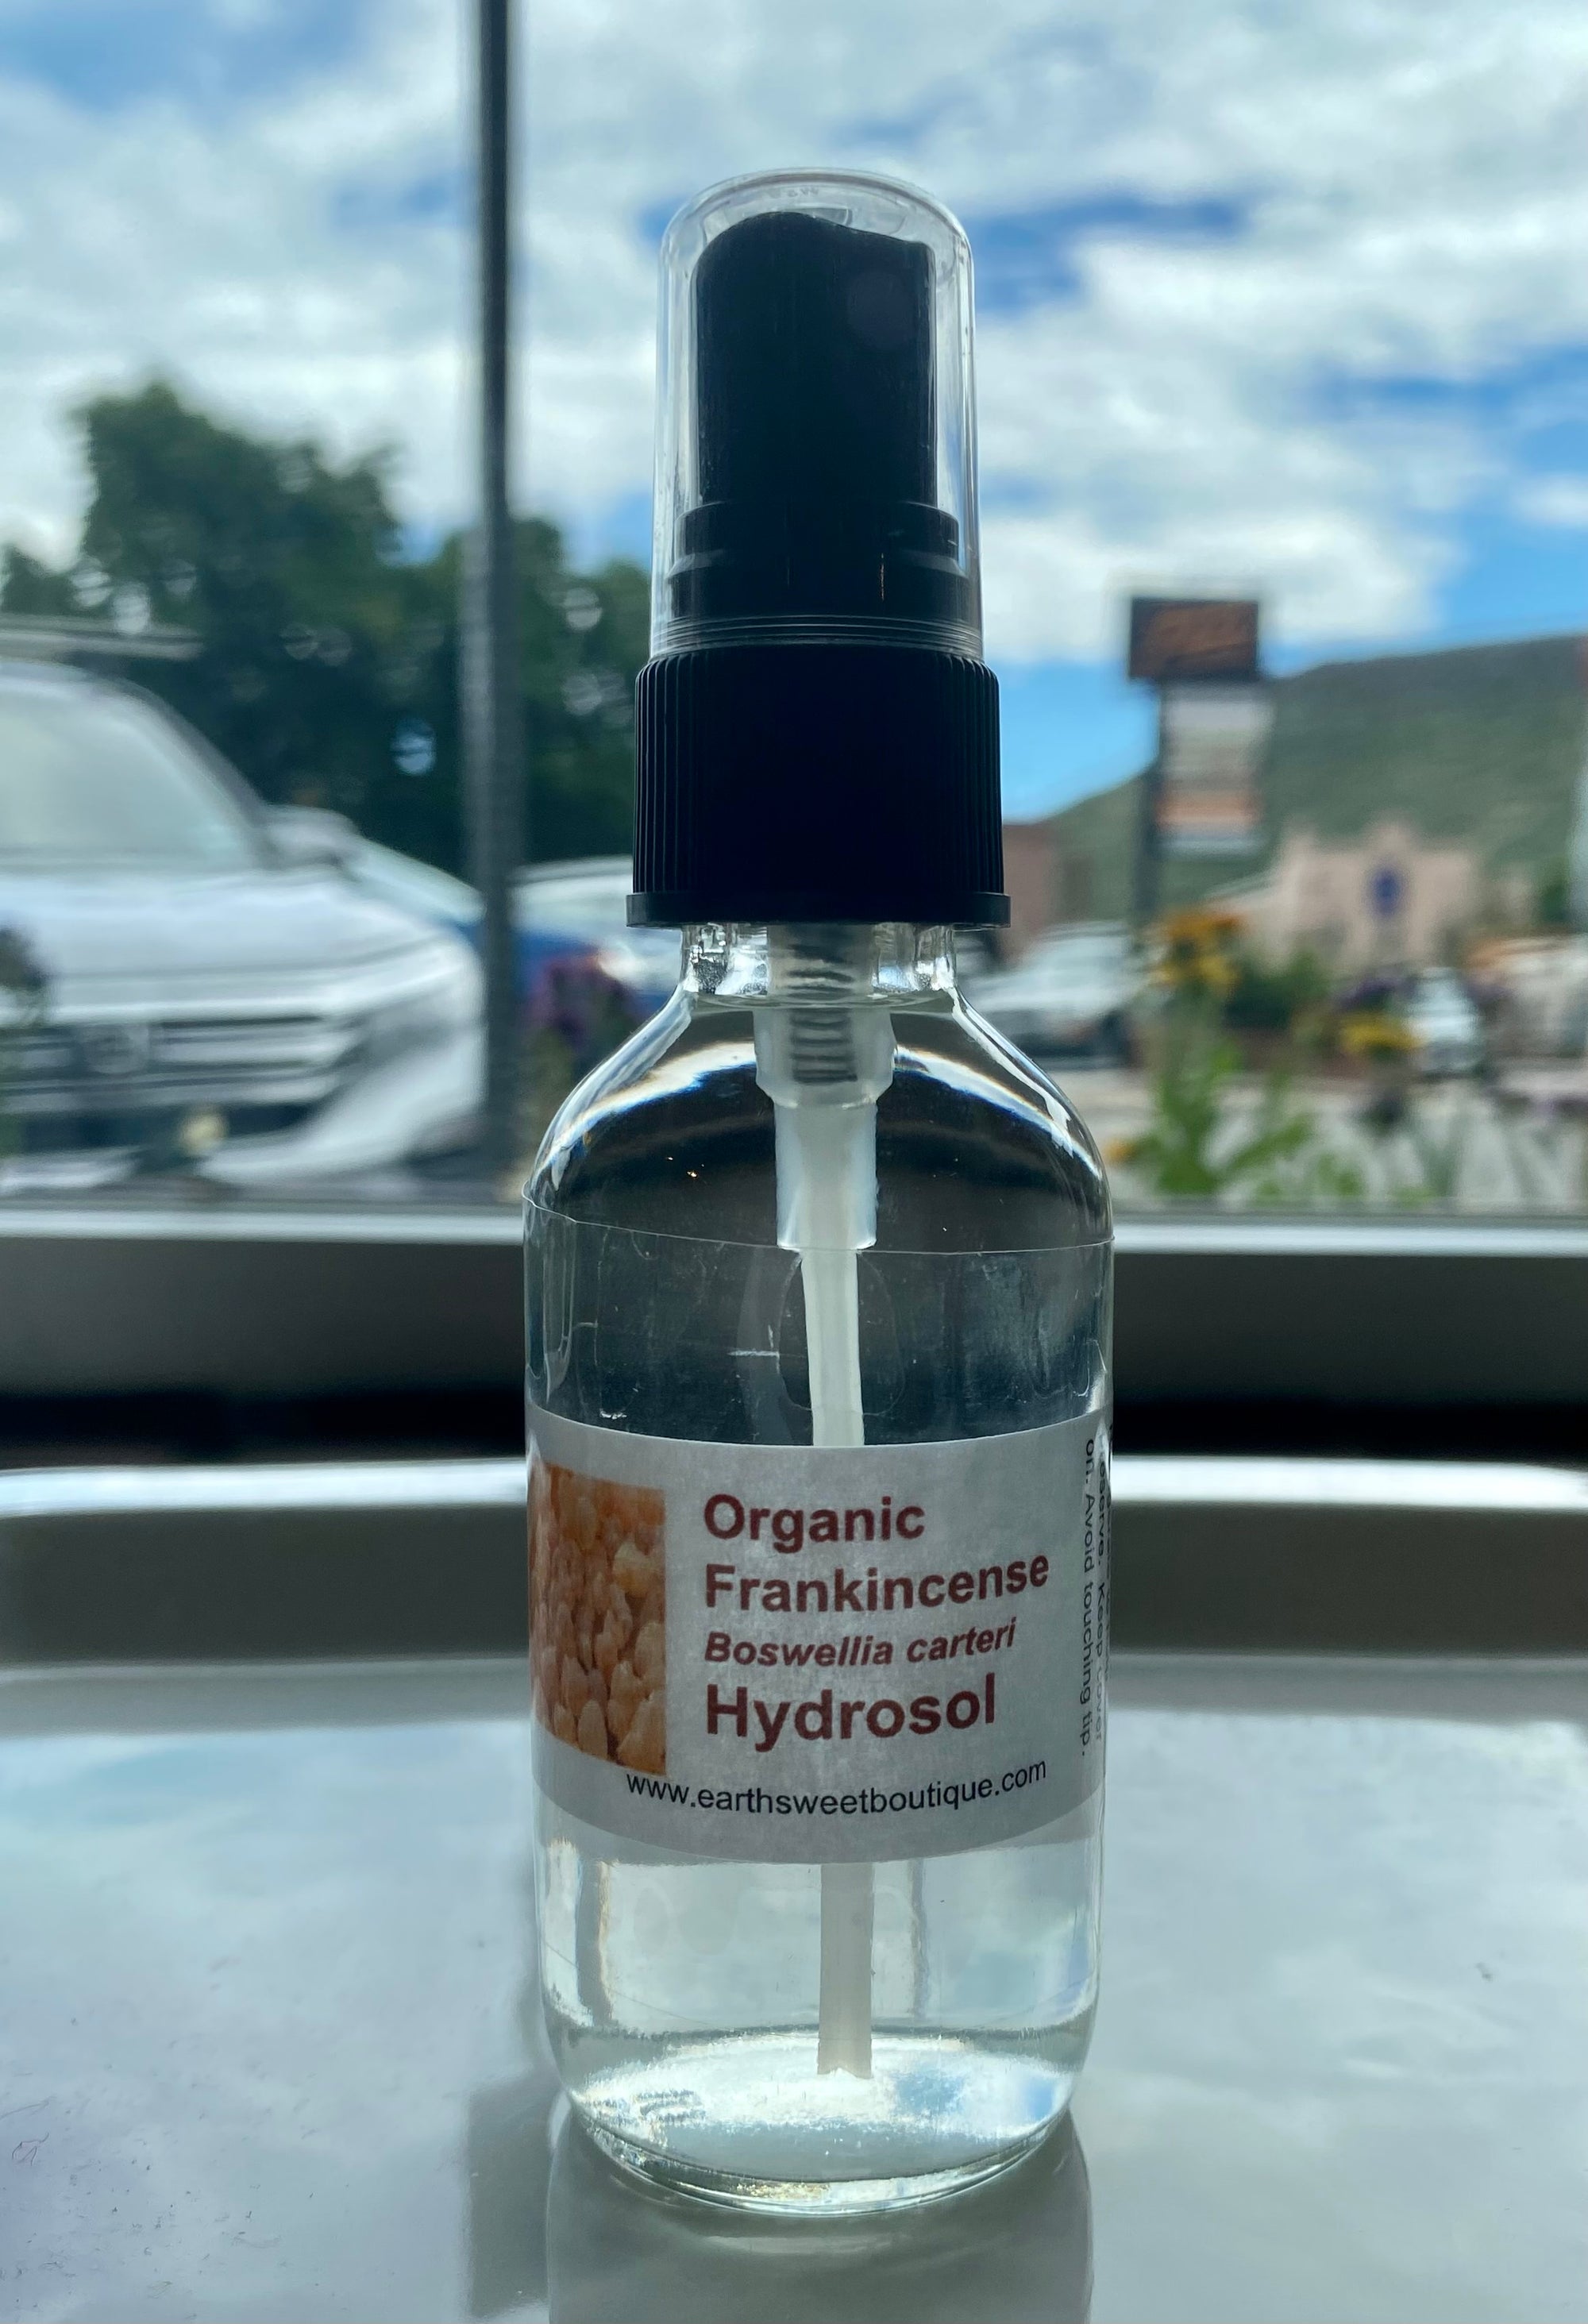 Frankincense Hydrosol